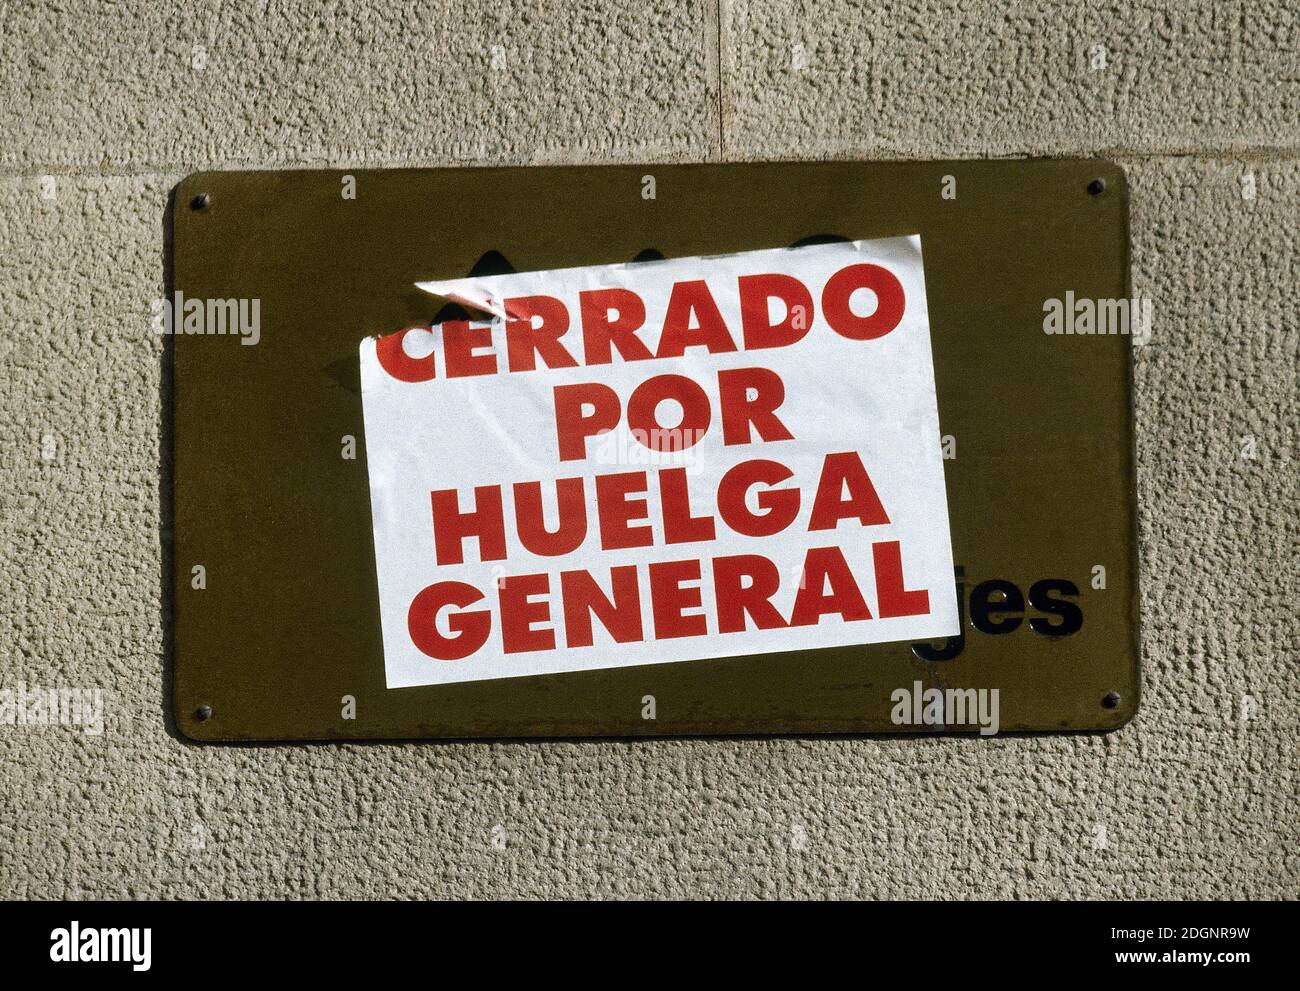 Autocollant en langue espagnole ' Cerrado por Huelga General' (fermé pour grève générale). Espagne, le 27 janvier 1994. Banque D'Images